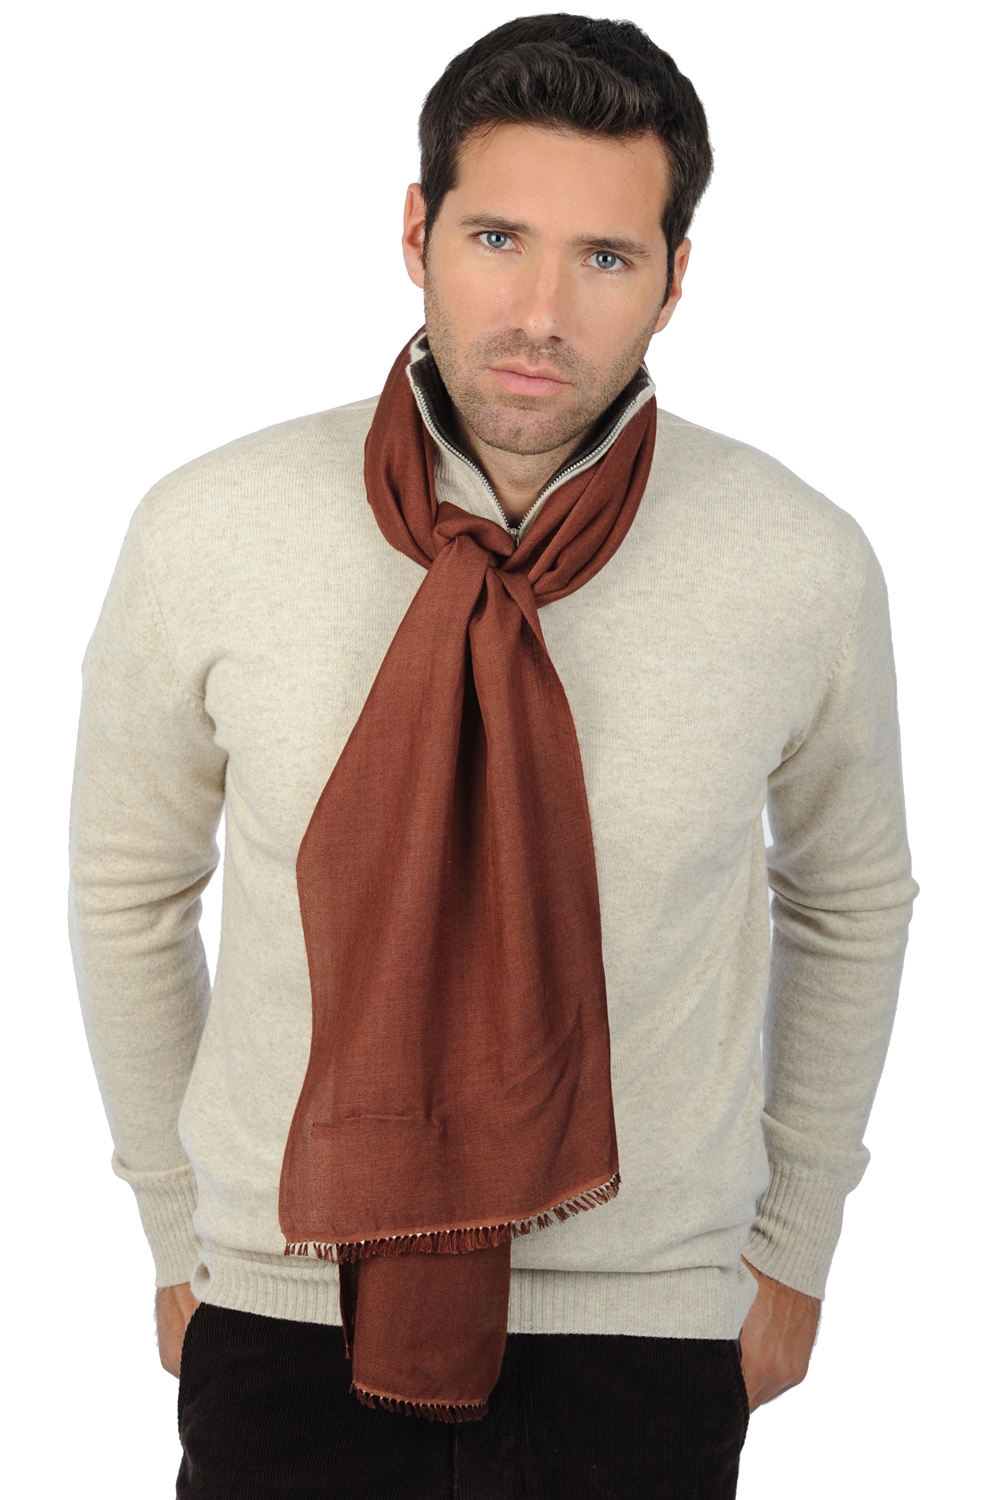 Cashmere & Zijde accessoires sjaals scarva chocolade bruin 170x25cm